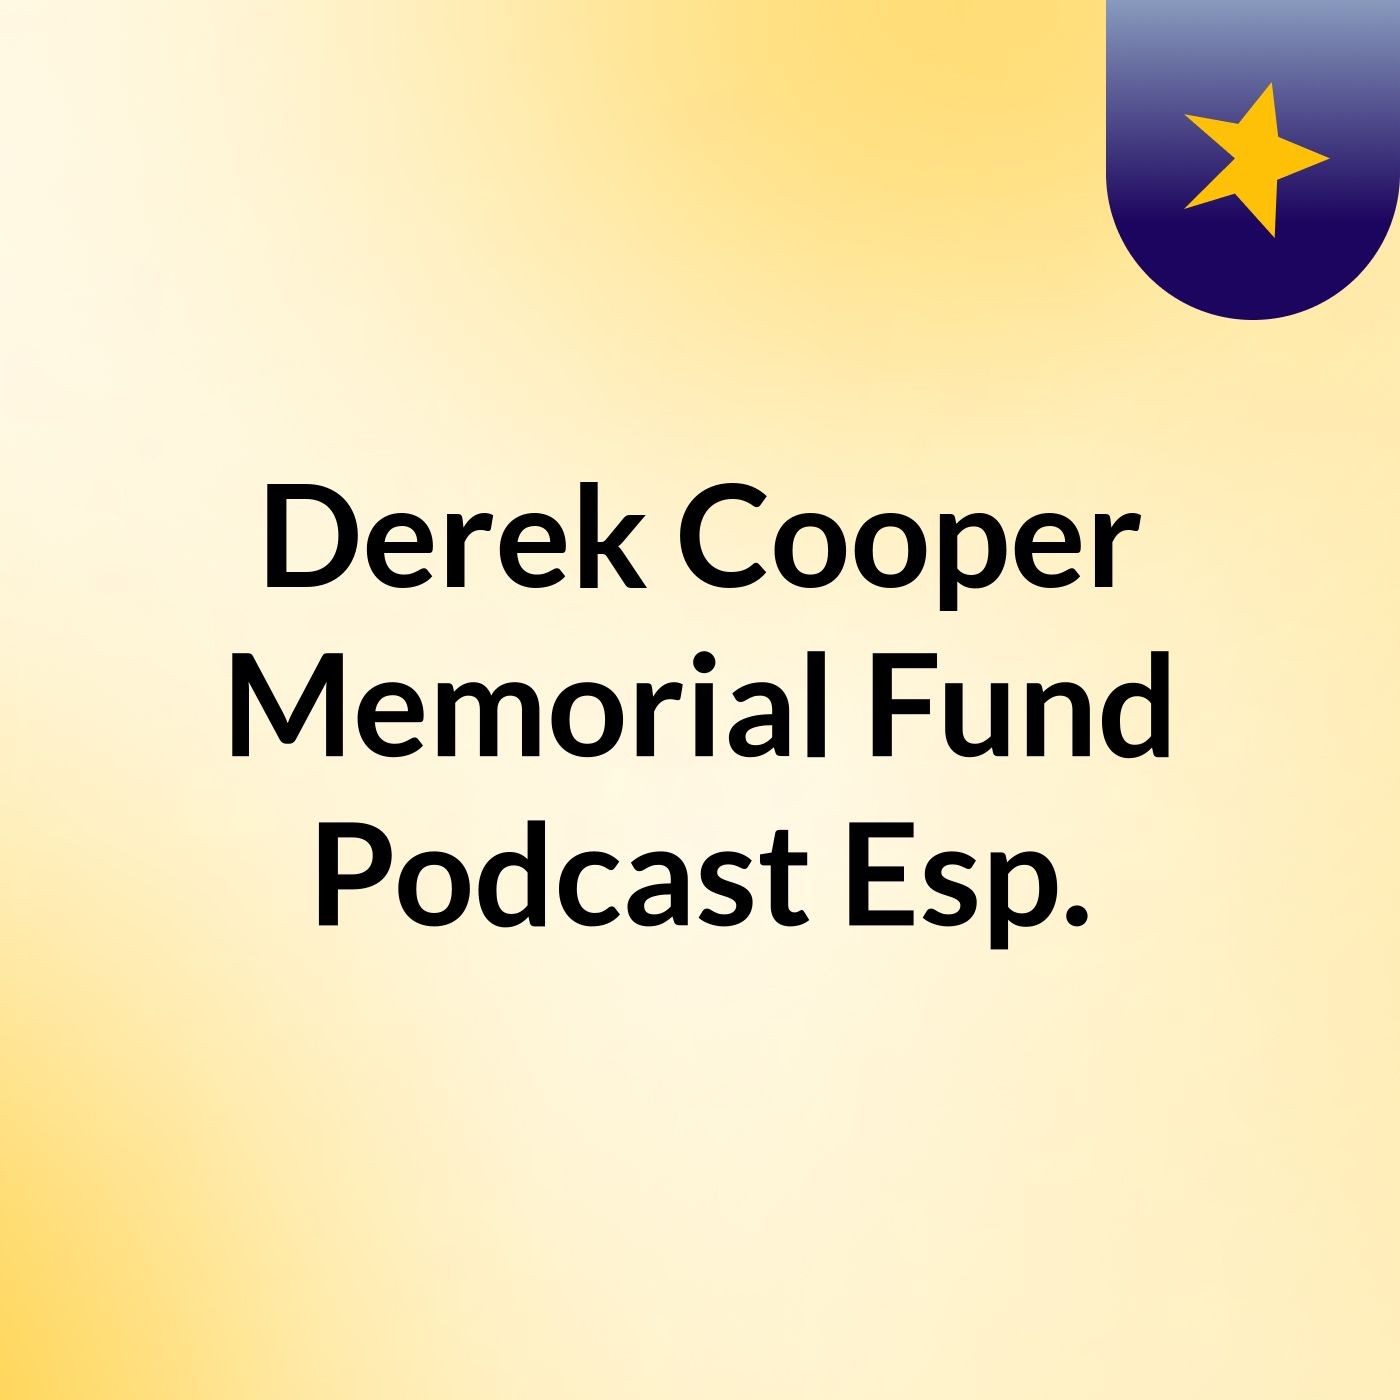 Derek Cooper Memorial Fund Podcast Esp.